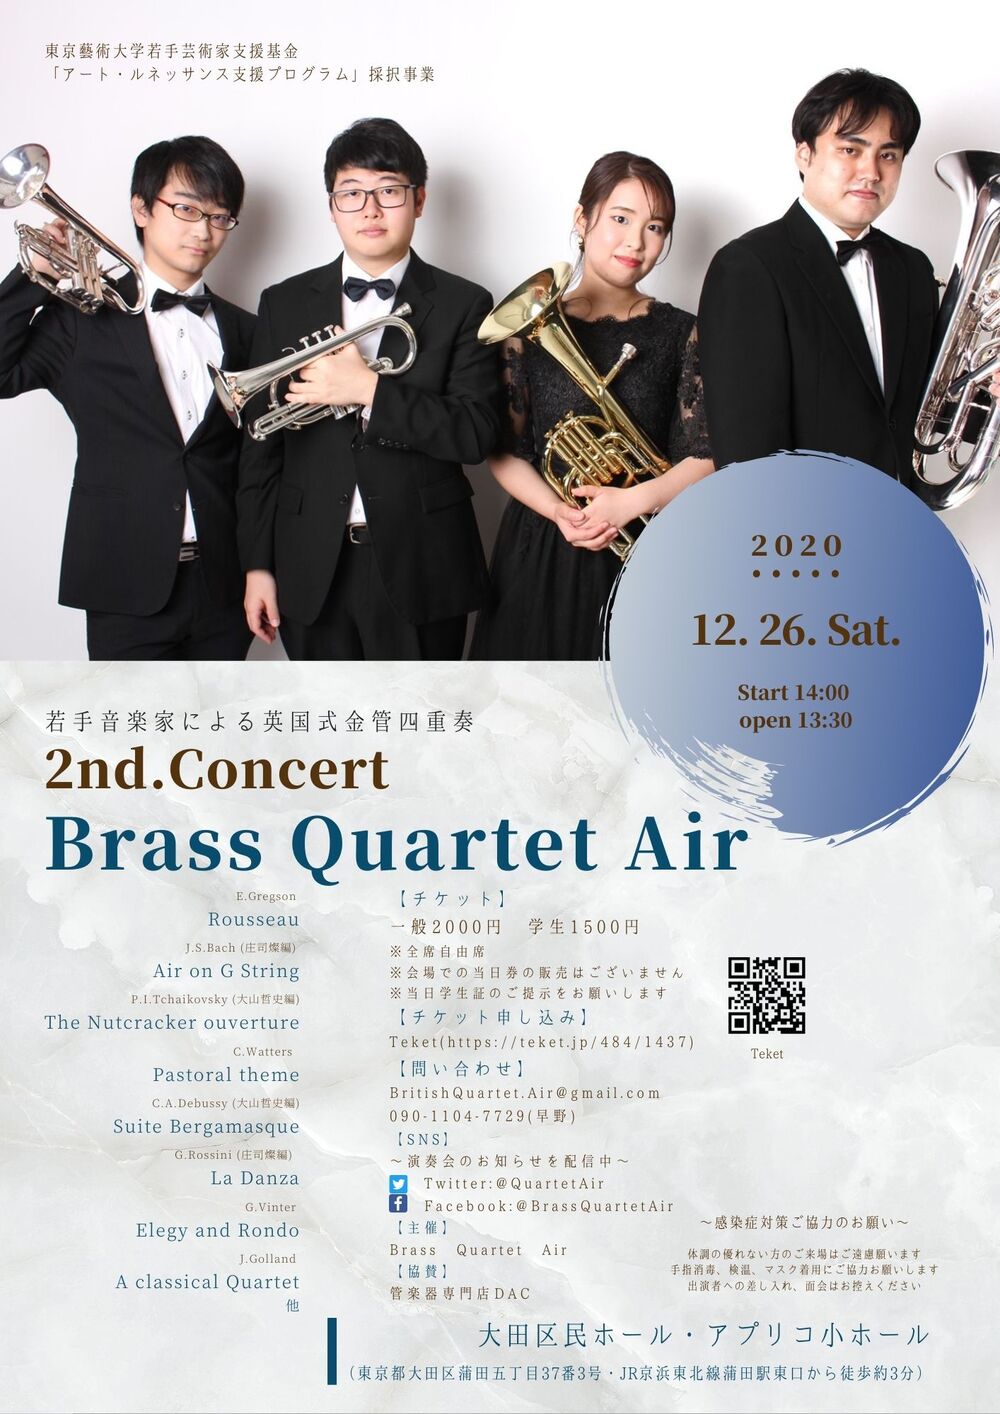 Brass Quartet Air 2nd. Concert【Brass Quartet Air】 | 大田区民 